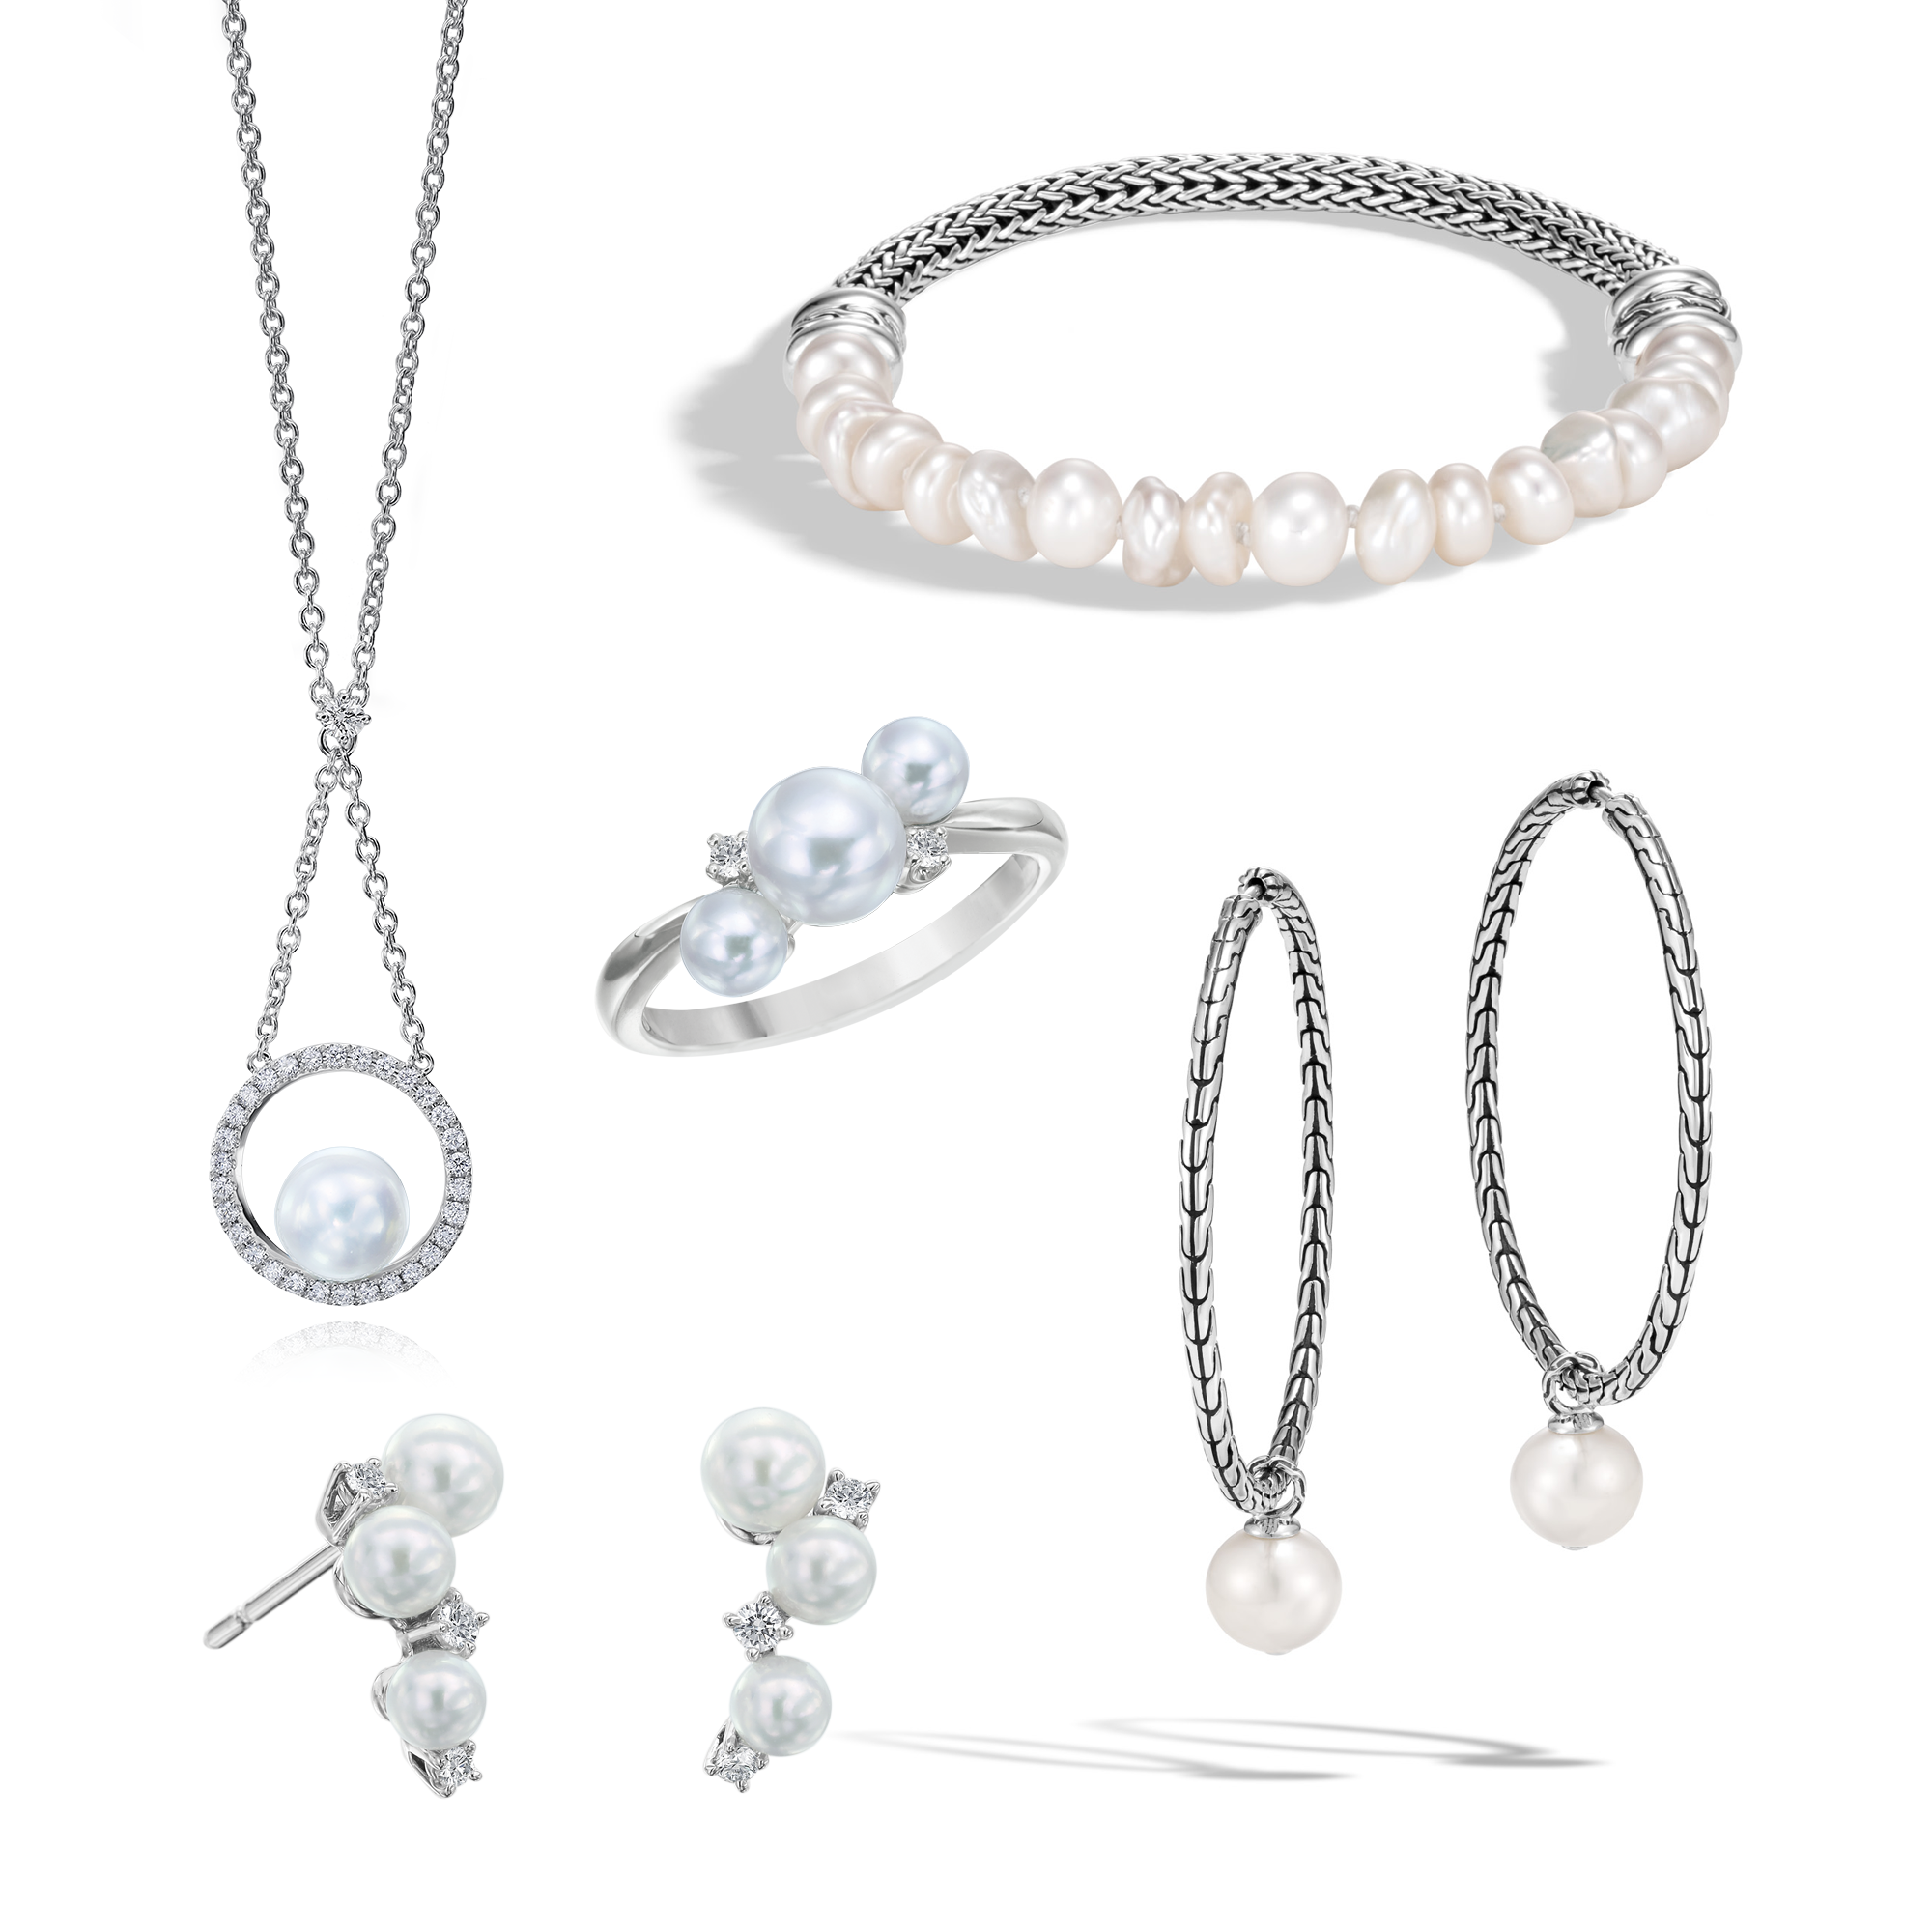 2021 Jewelry Trends - R.F. Moeller Jeweler